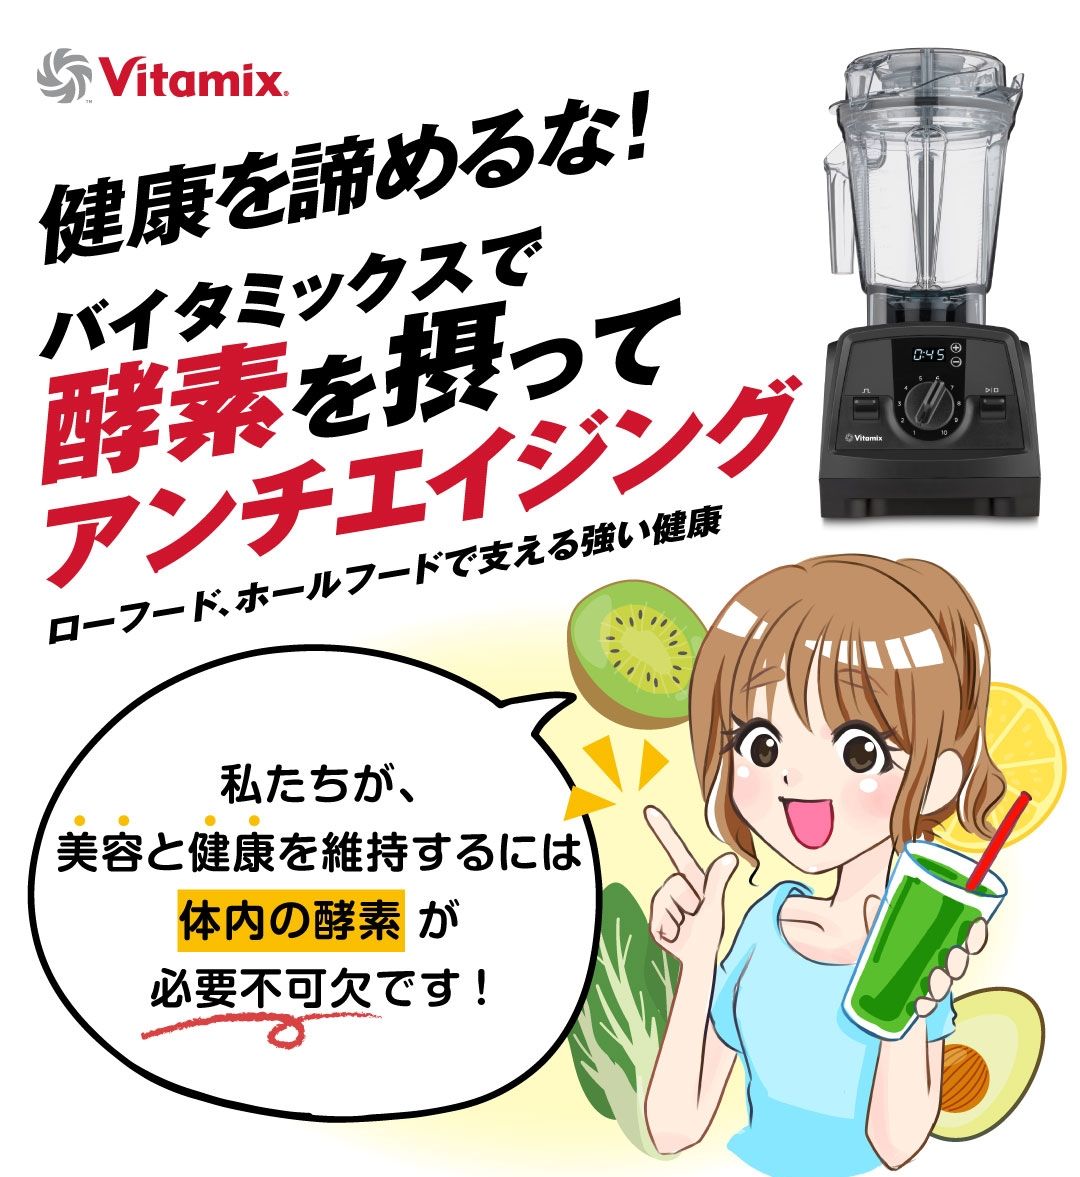 entre square 店ミキサー バイタミックス Vitamix 氷対応 スムージー v1200i ブレンダー ジューサー